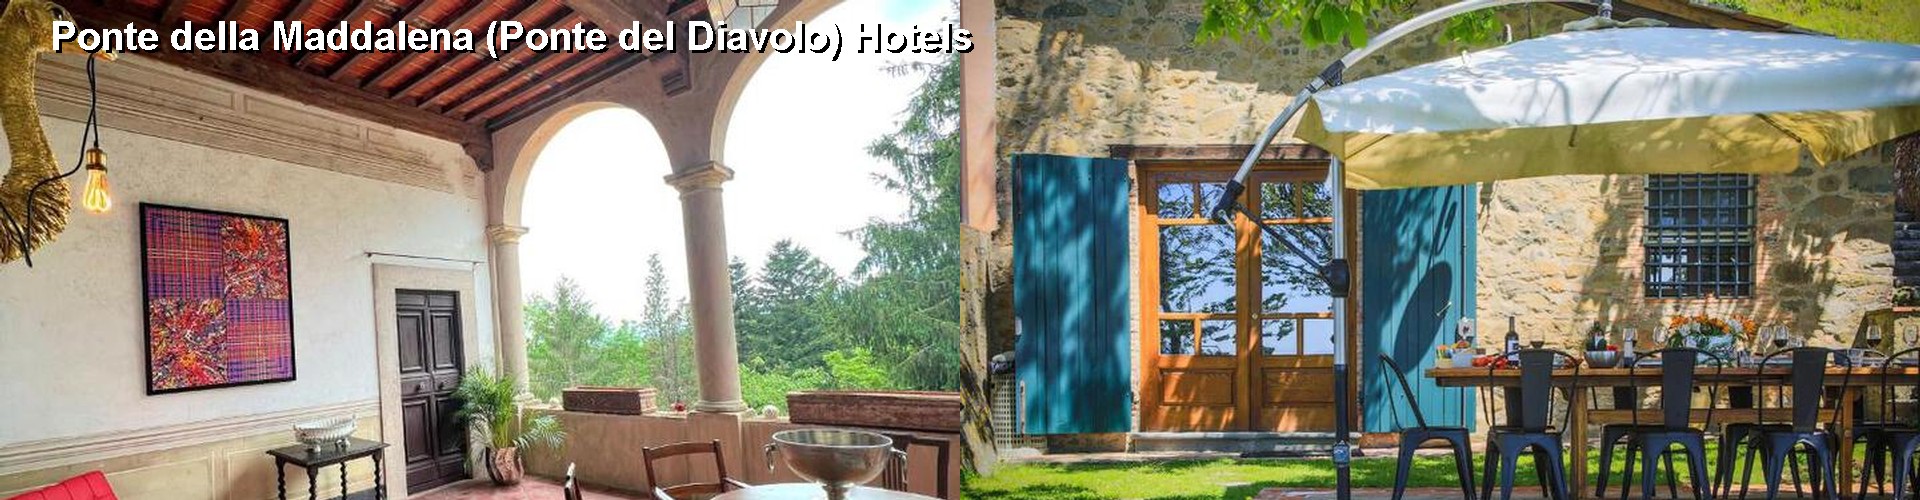 5 Best Hotels near Ponte della Maddalena (Ponte del Diavolo)